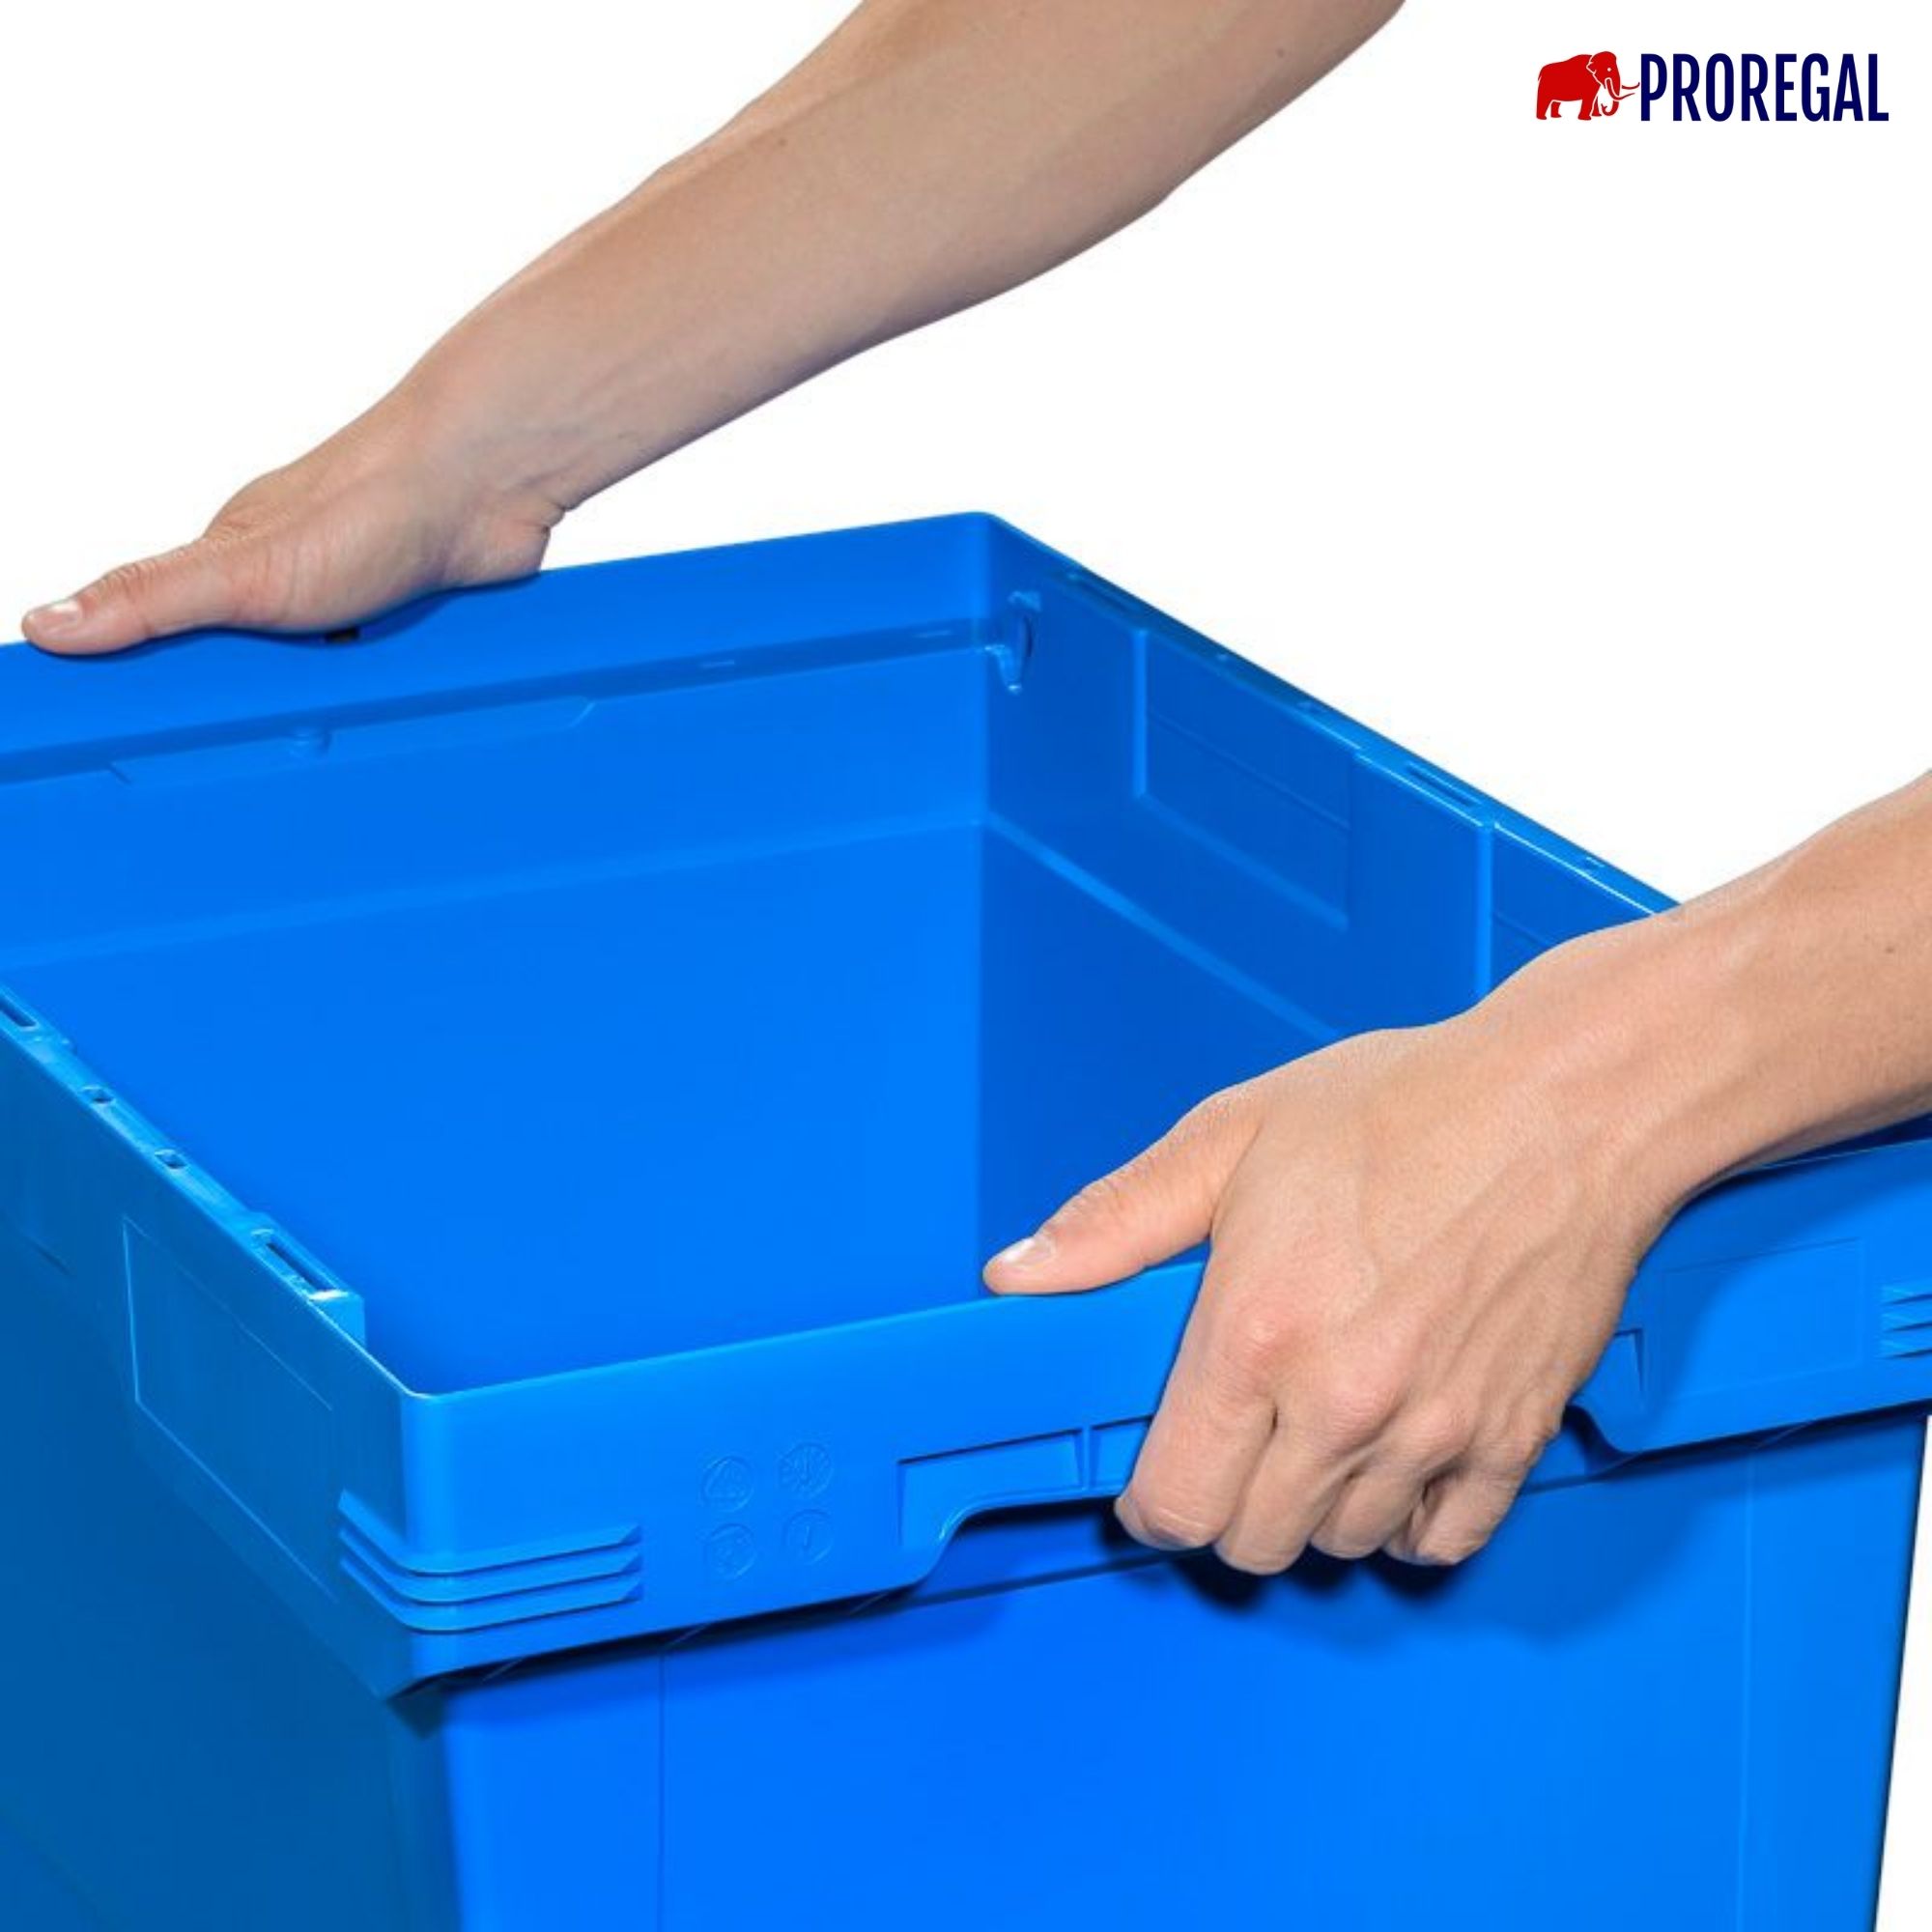 Conical Mehrweg-Stapelbehälter mit Stapelbügel Blau | HxBxT 17,3x40x60cm | 29 Liter | Lagerbox Eurobox Transportbox Transportbehälter Stapelbehälter